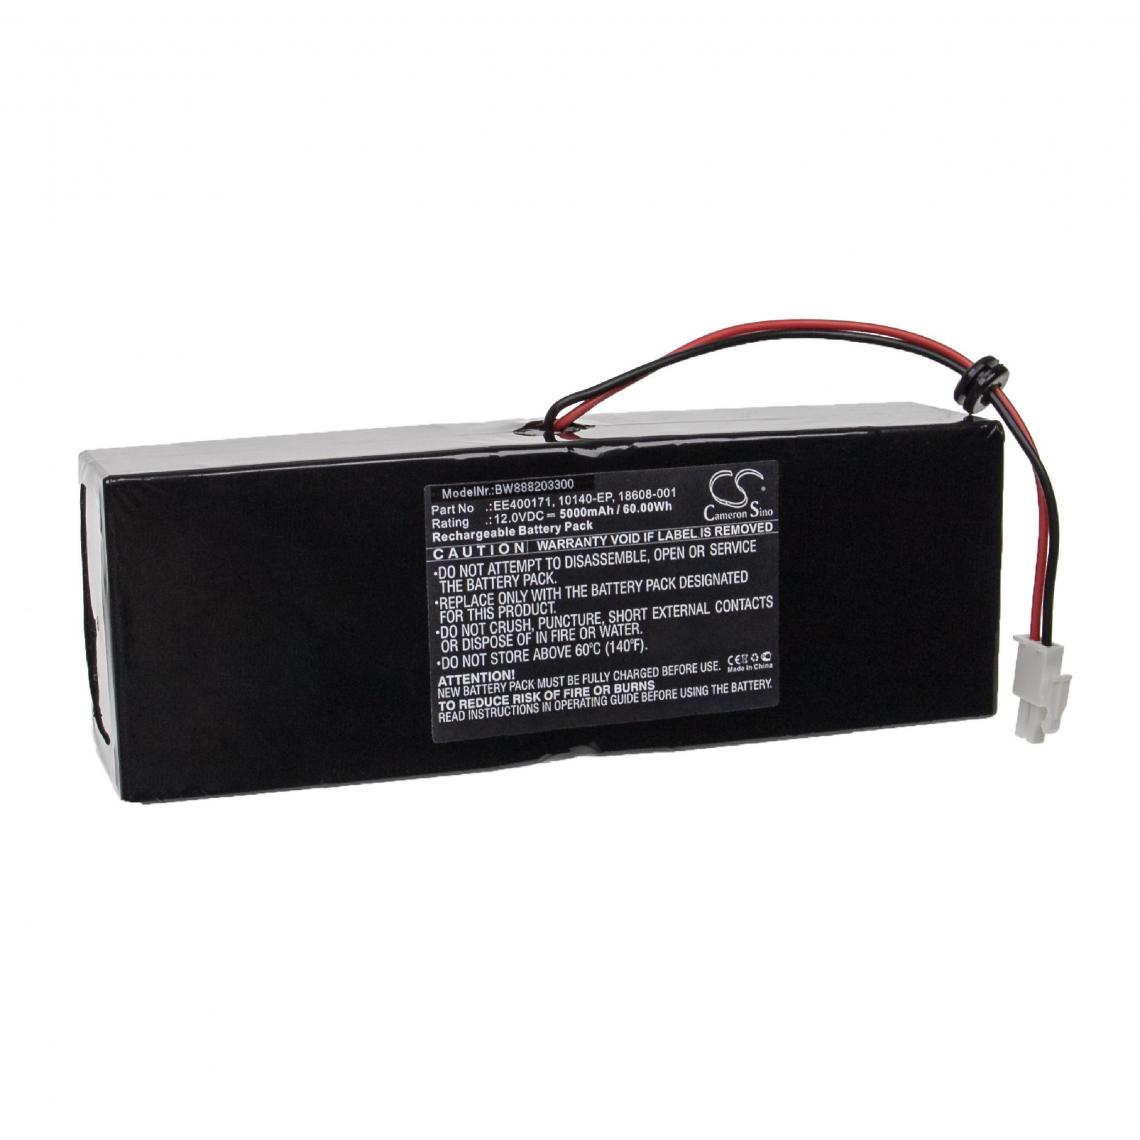 Vhbw - vhbw Batterie compatible avec Carefusion LTV 1150, LTV 1200, LTV 900, LTV 950 appareil médical (5000mAh, 12V, Sealed Lead Acid) - Piles spécifiques